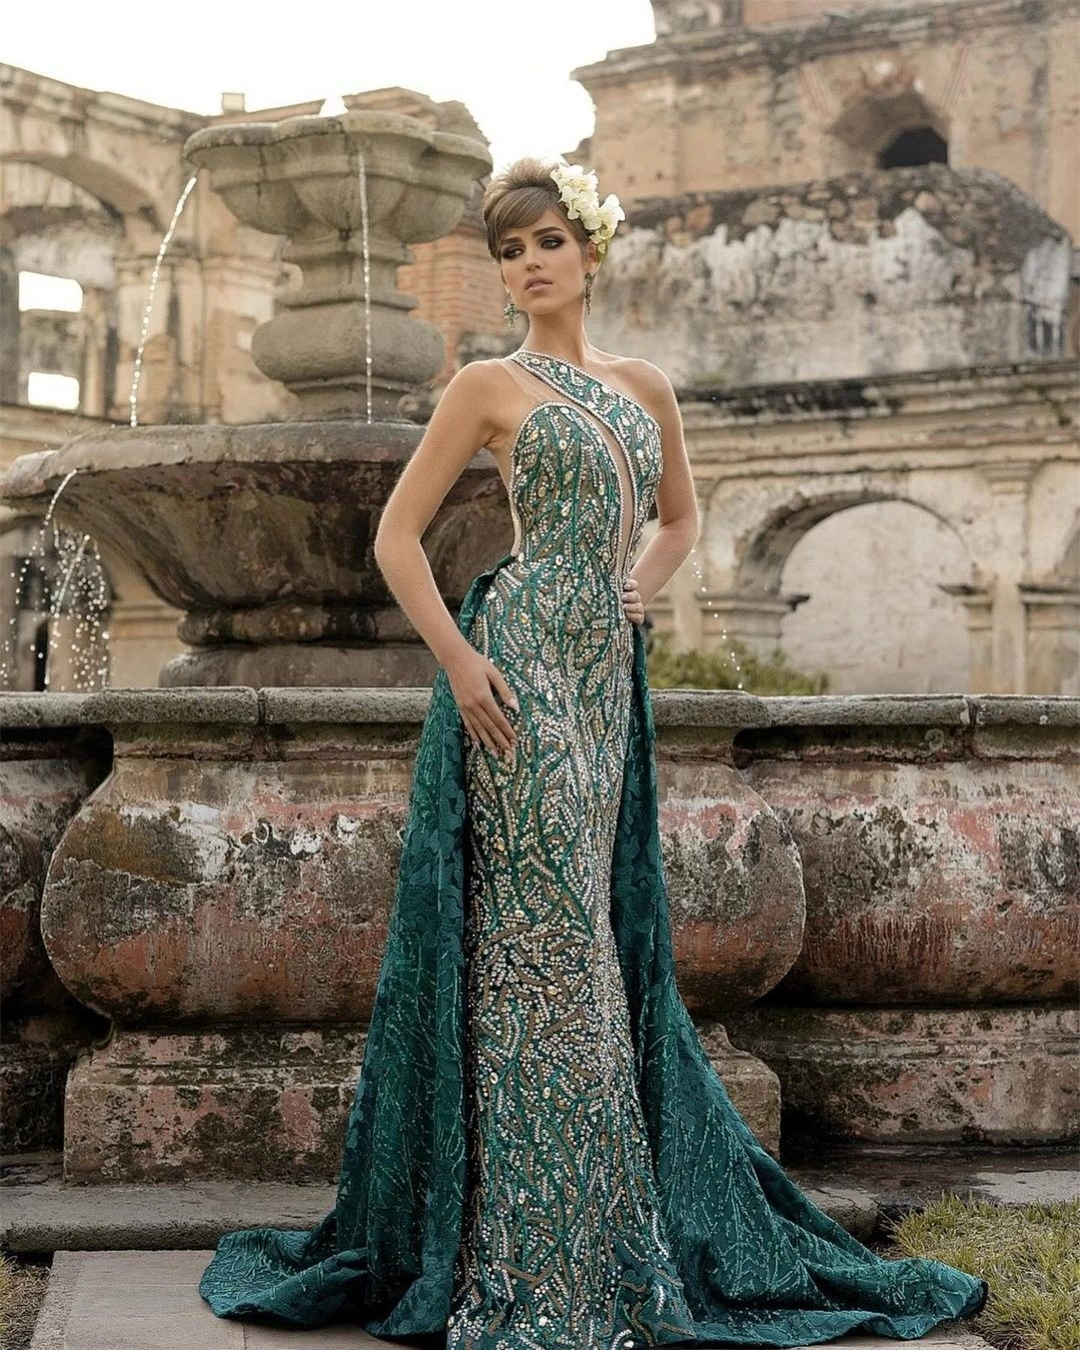 Tân Hoa hậu Hòa bình Guatemala bị chê già nua ảnh 4